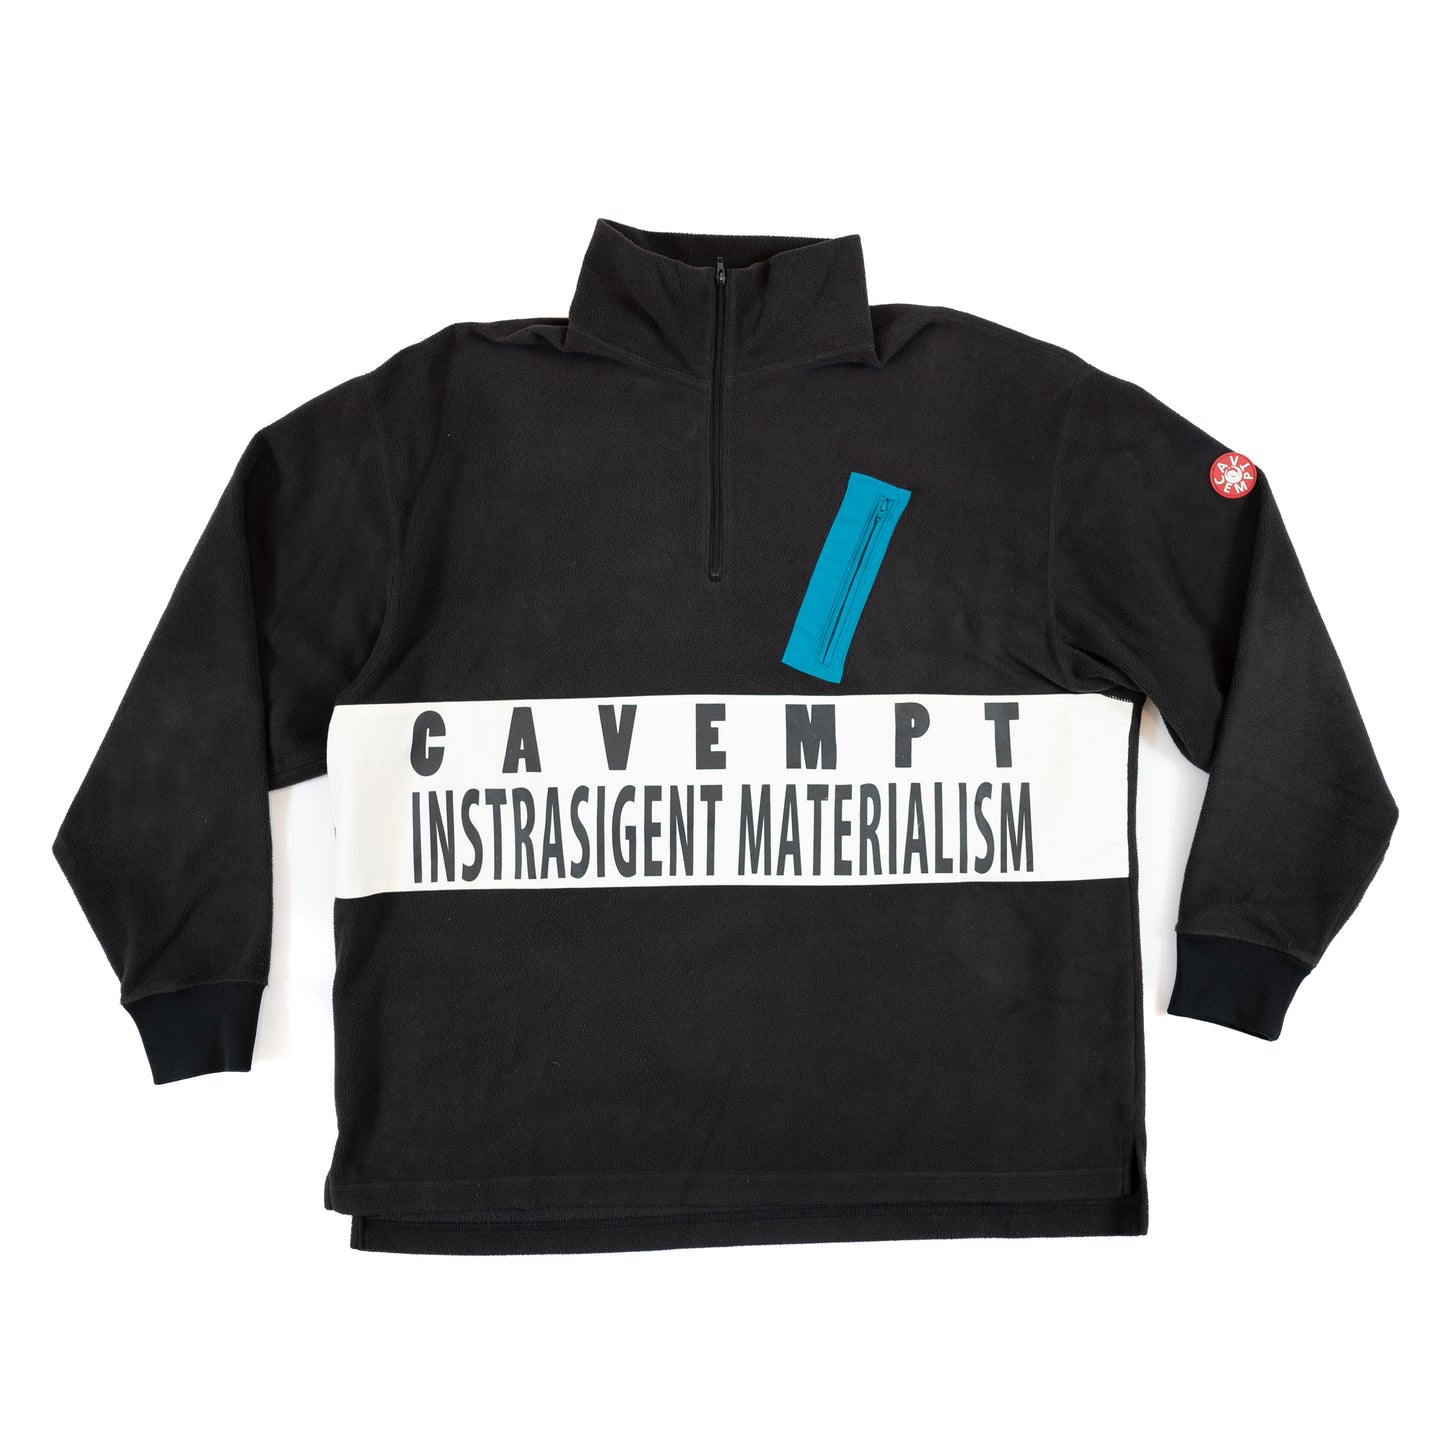 Cav Empt "Instrasigent Materialism" 3/4 Zip Fleece Pullover (2016FW)